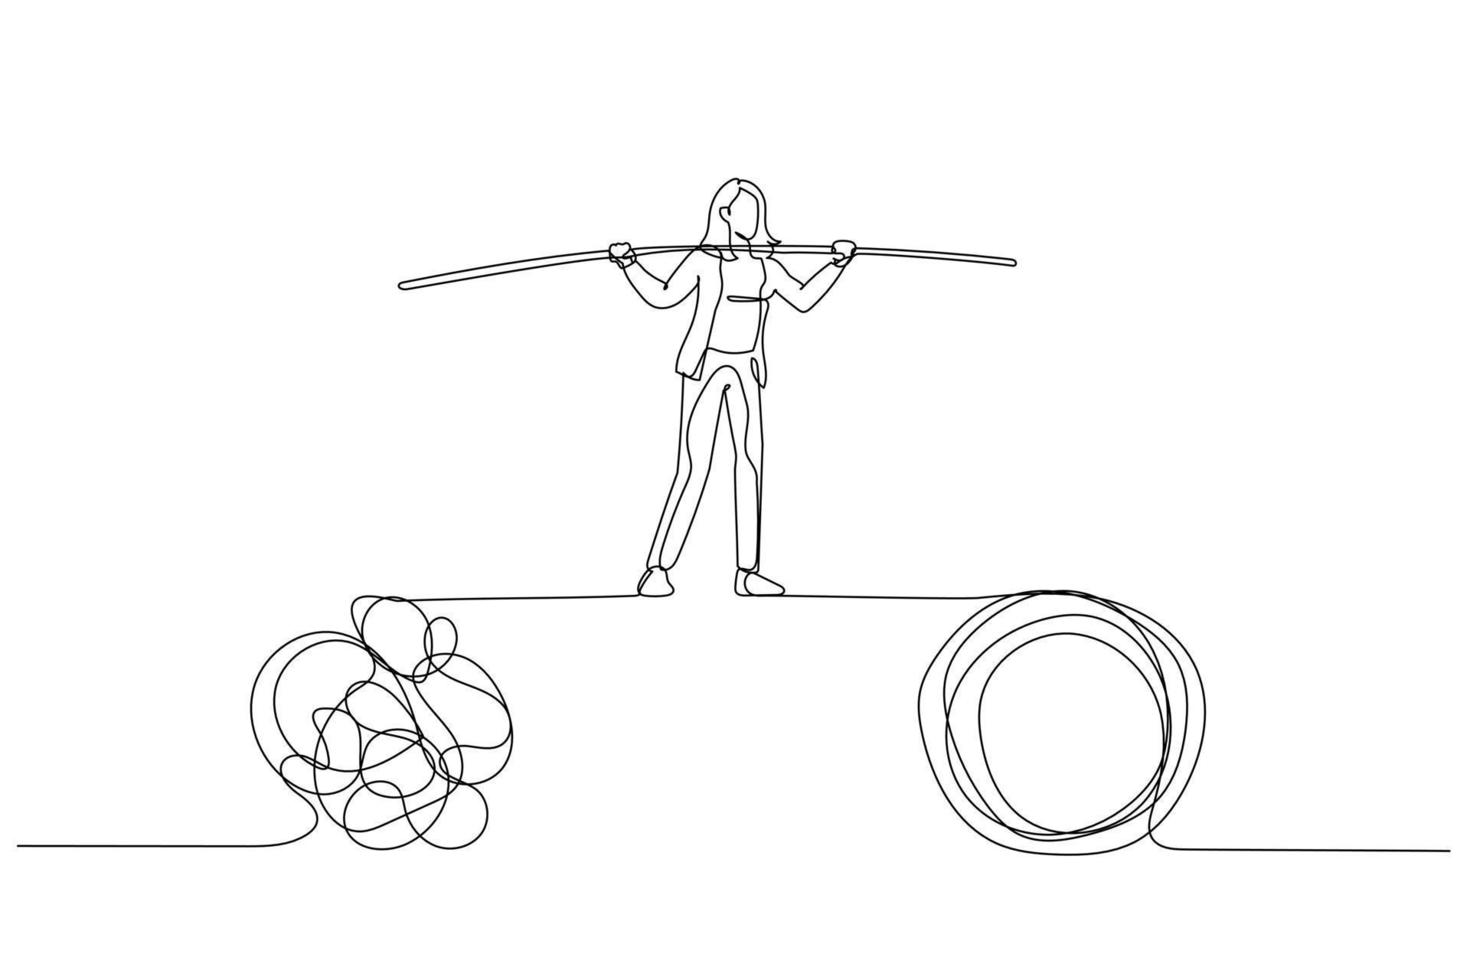 Zeichnung der Geschäftsfrau zu Fuß auf einem engen Seil, das zwischen Problemen balanciert. Kunststil mit einer durchgehenden Linie vektor